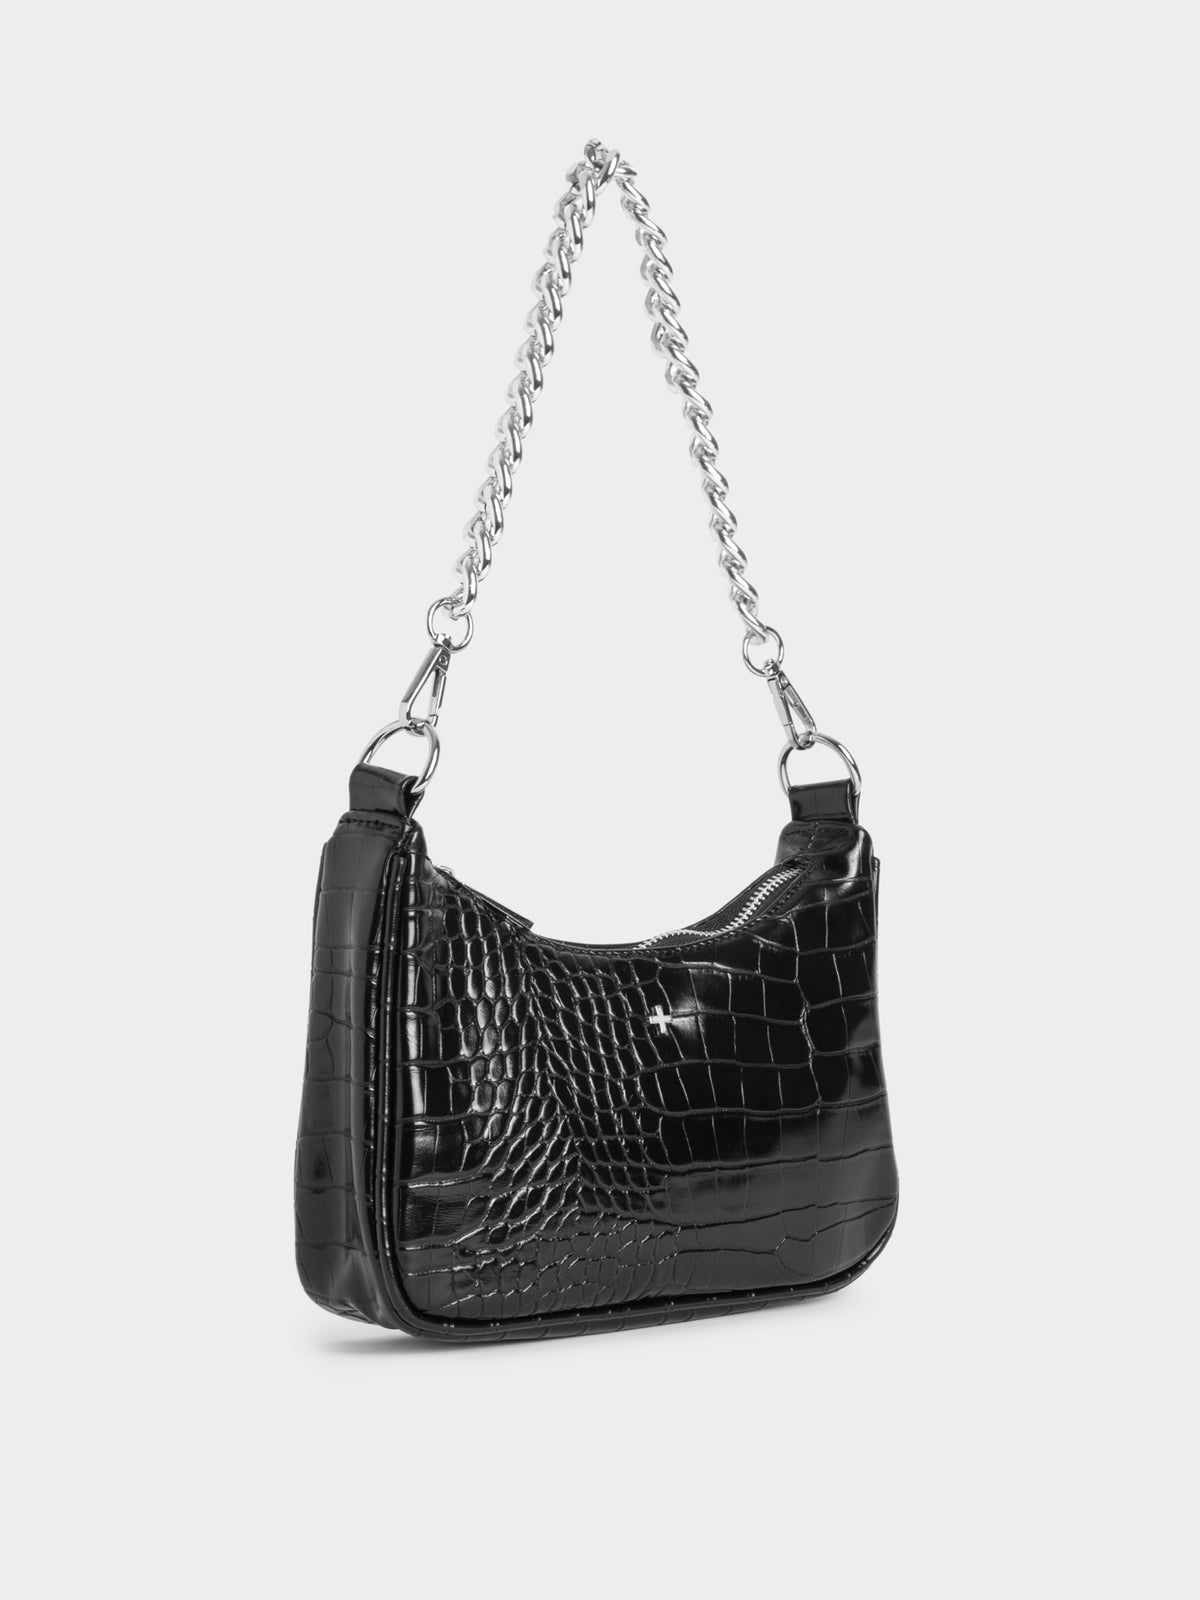 York Shoulder Bag in Black Croc